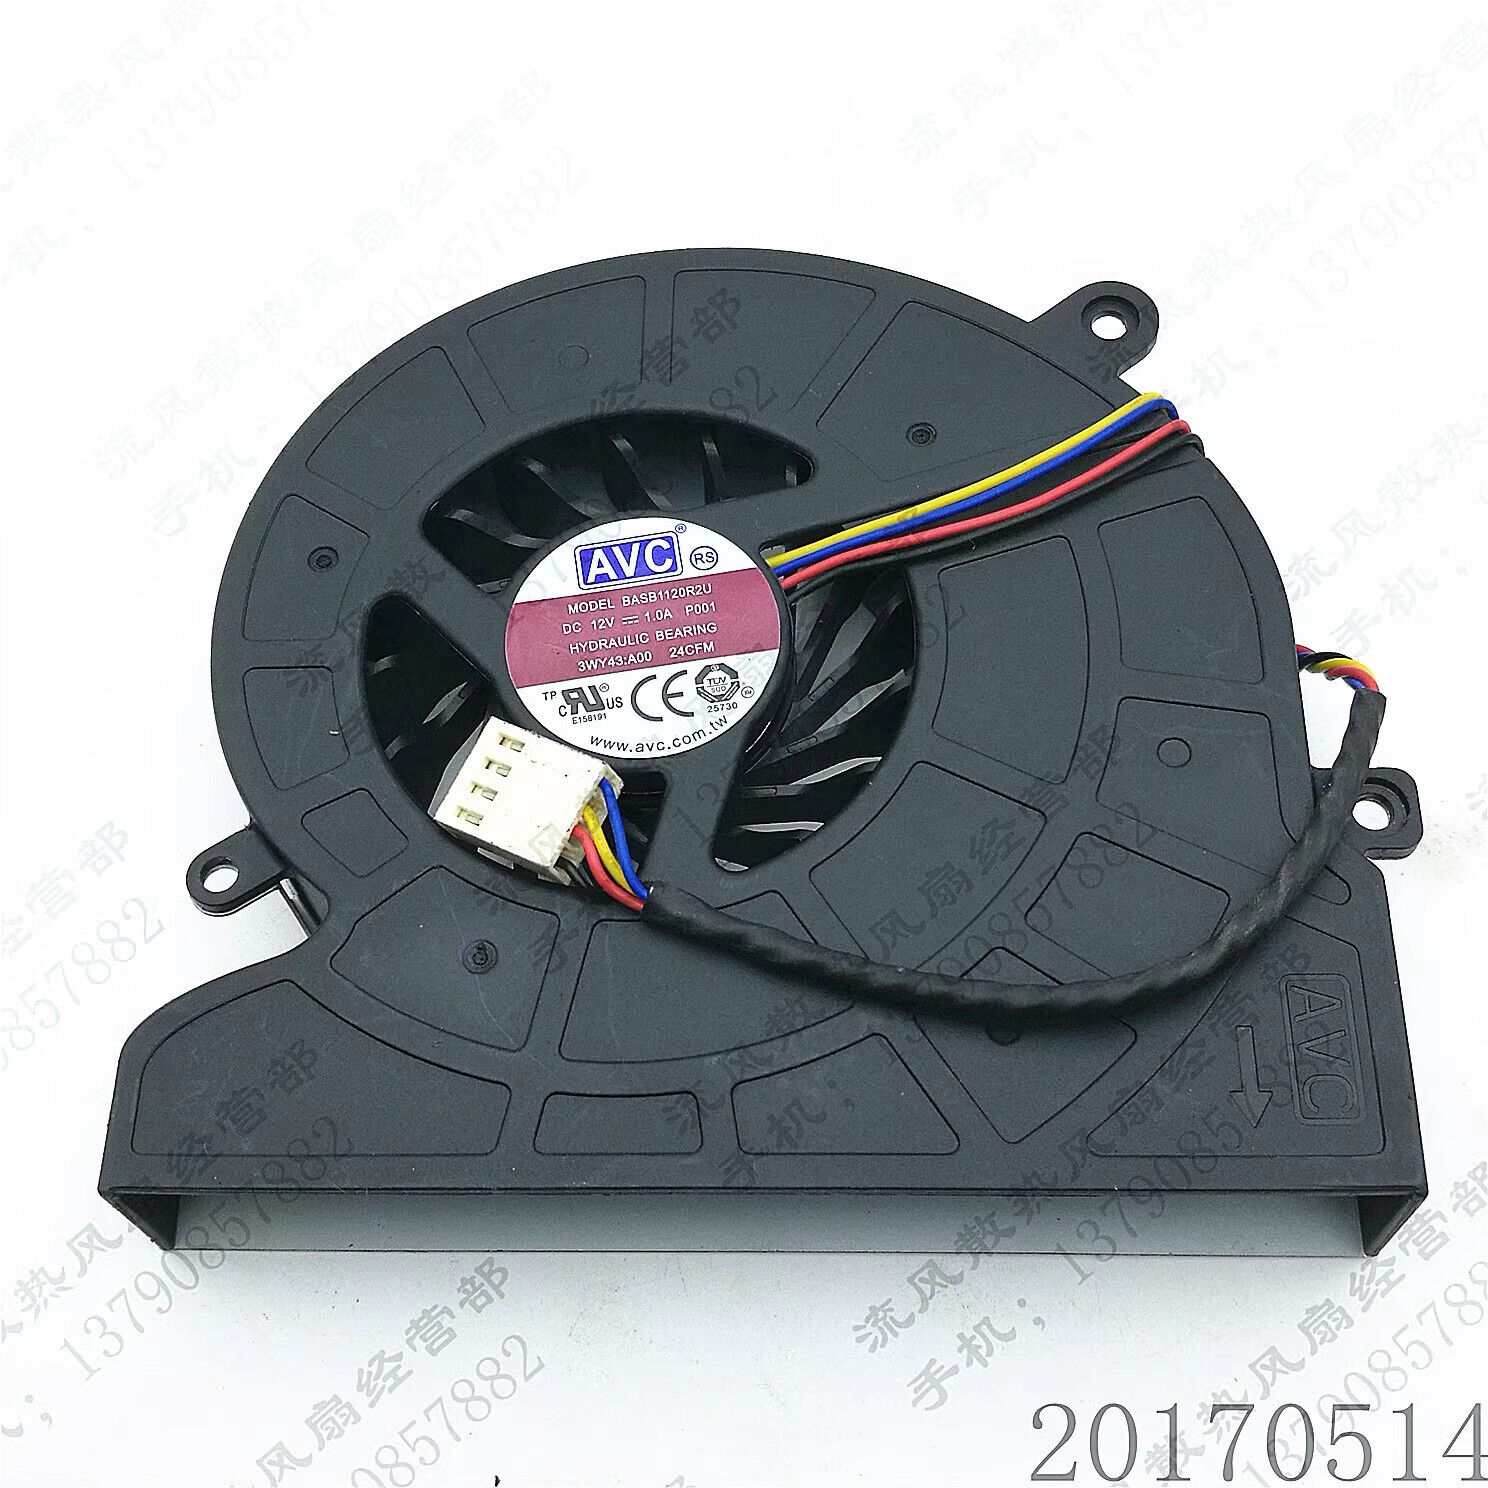 AVC BASB1120R2U P005 12V 1A 4-pin Dell all-in-one CPU cooling fan